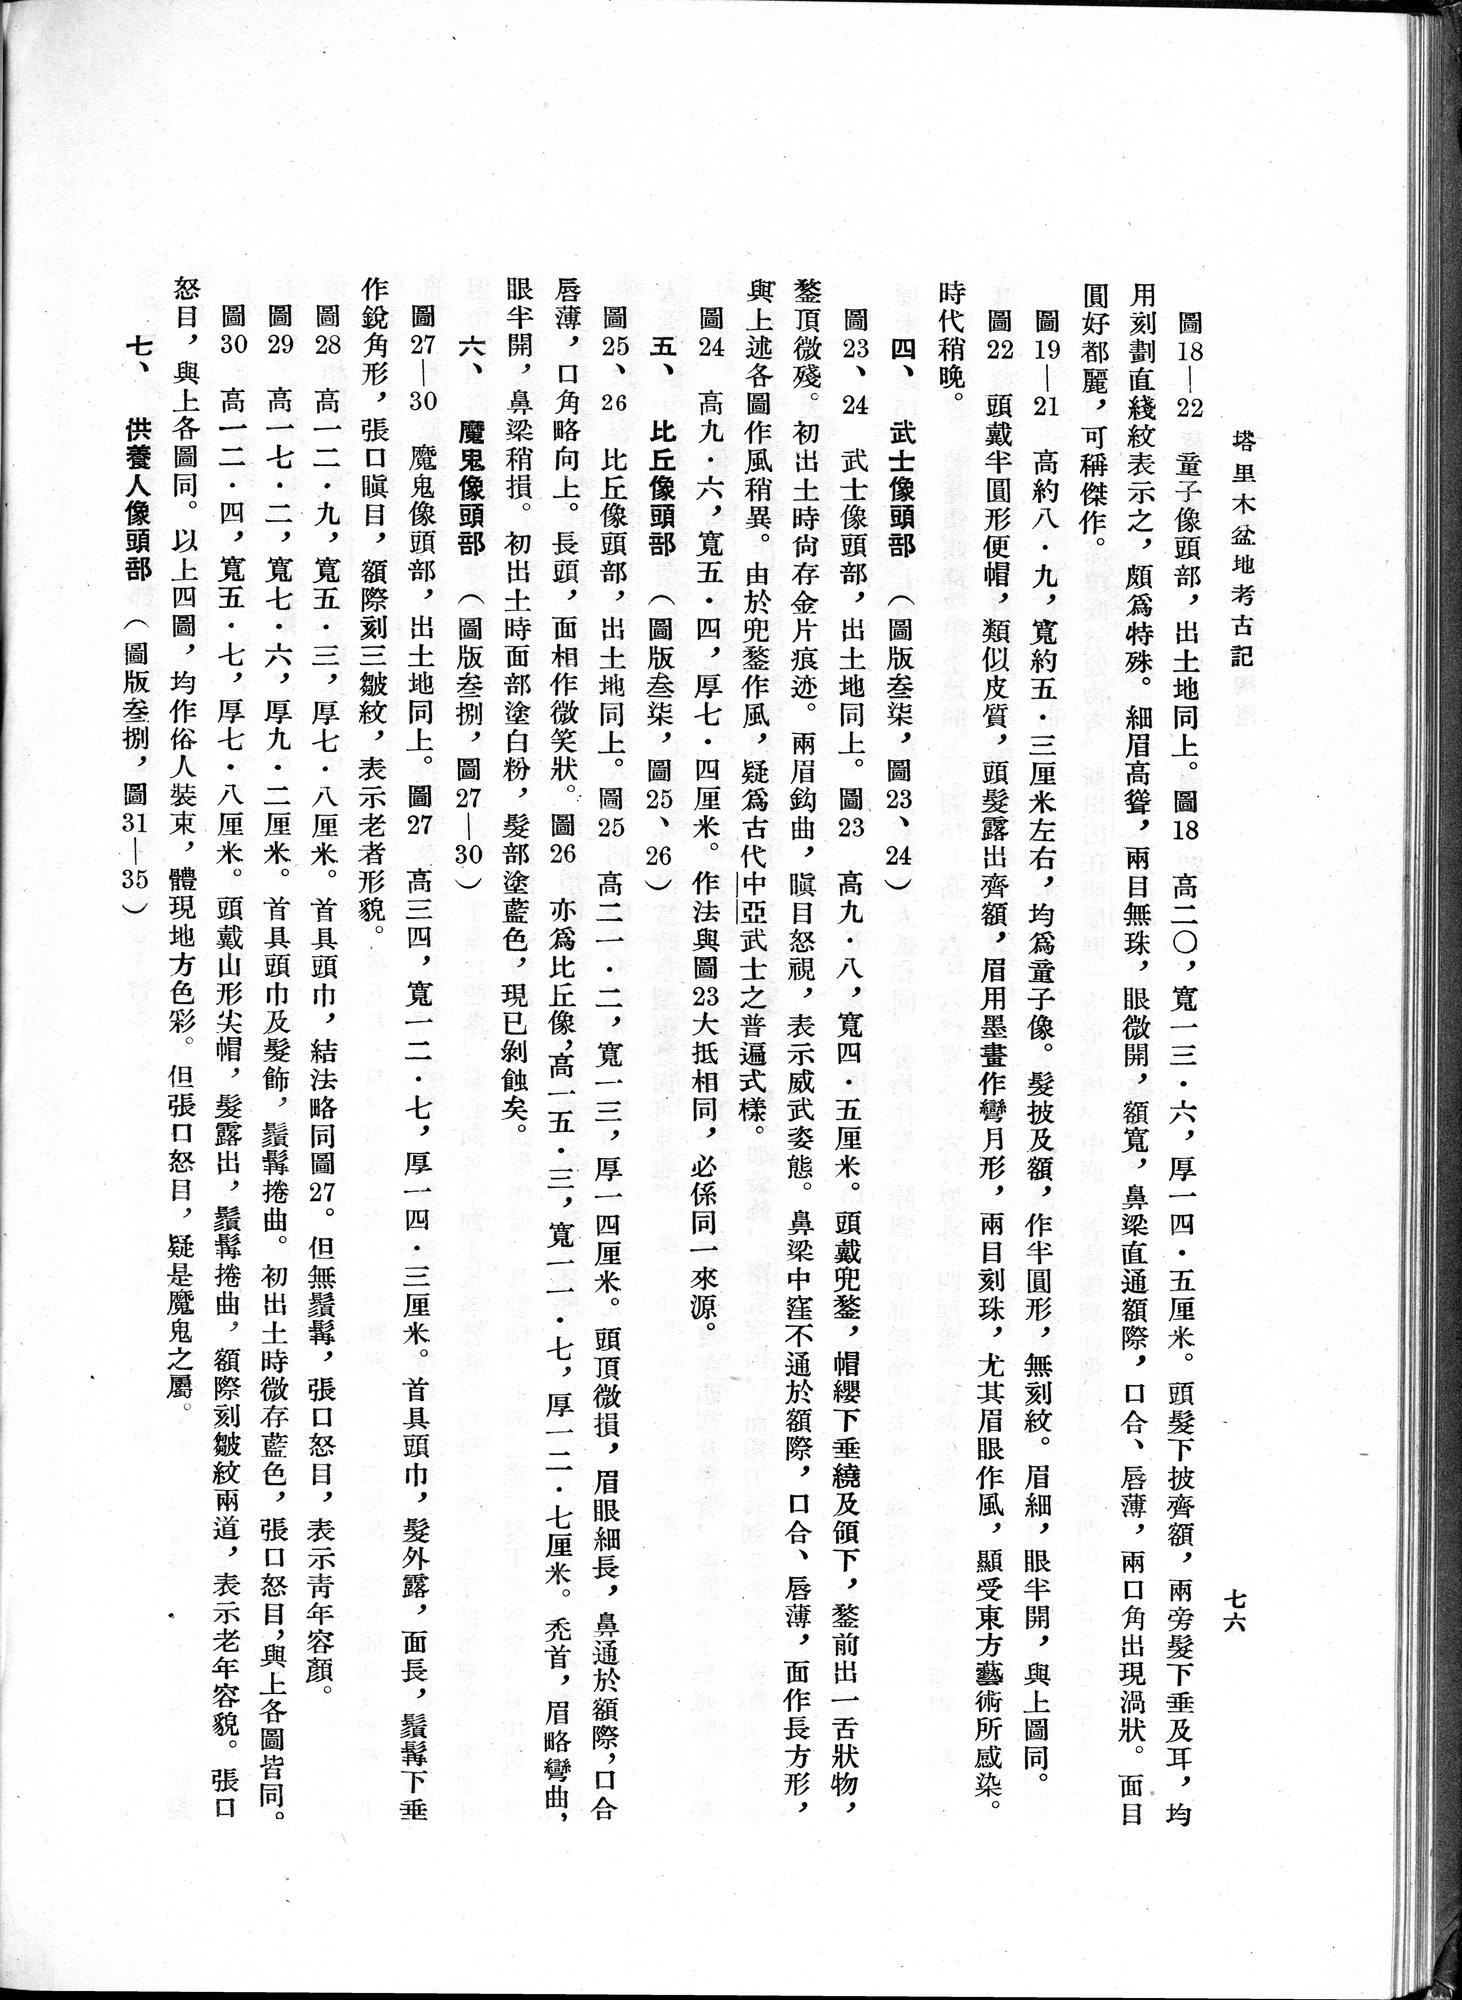 塔里木盆地考古記 : vol.1 / Page 140 (Grayscale High Resolution Image)